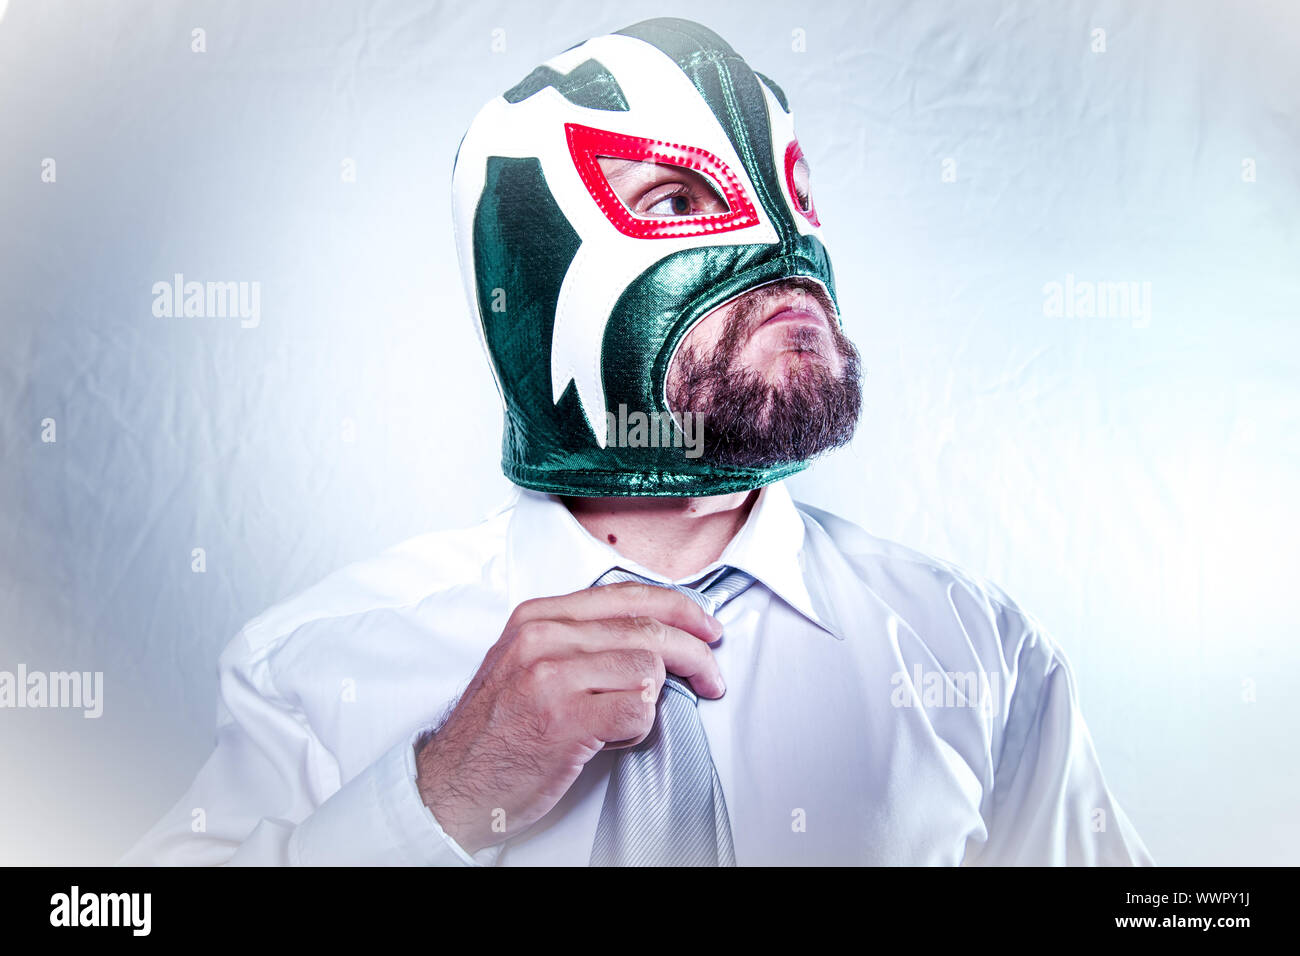 Angry businessman avec masque de catcheur mexicain, les expressions de colère et de rage Banque D'Images